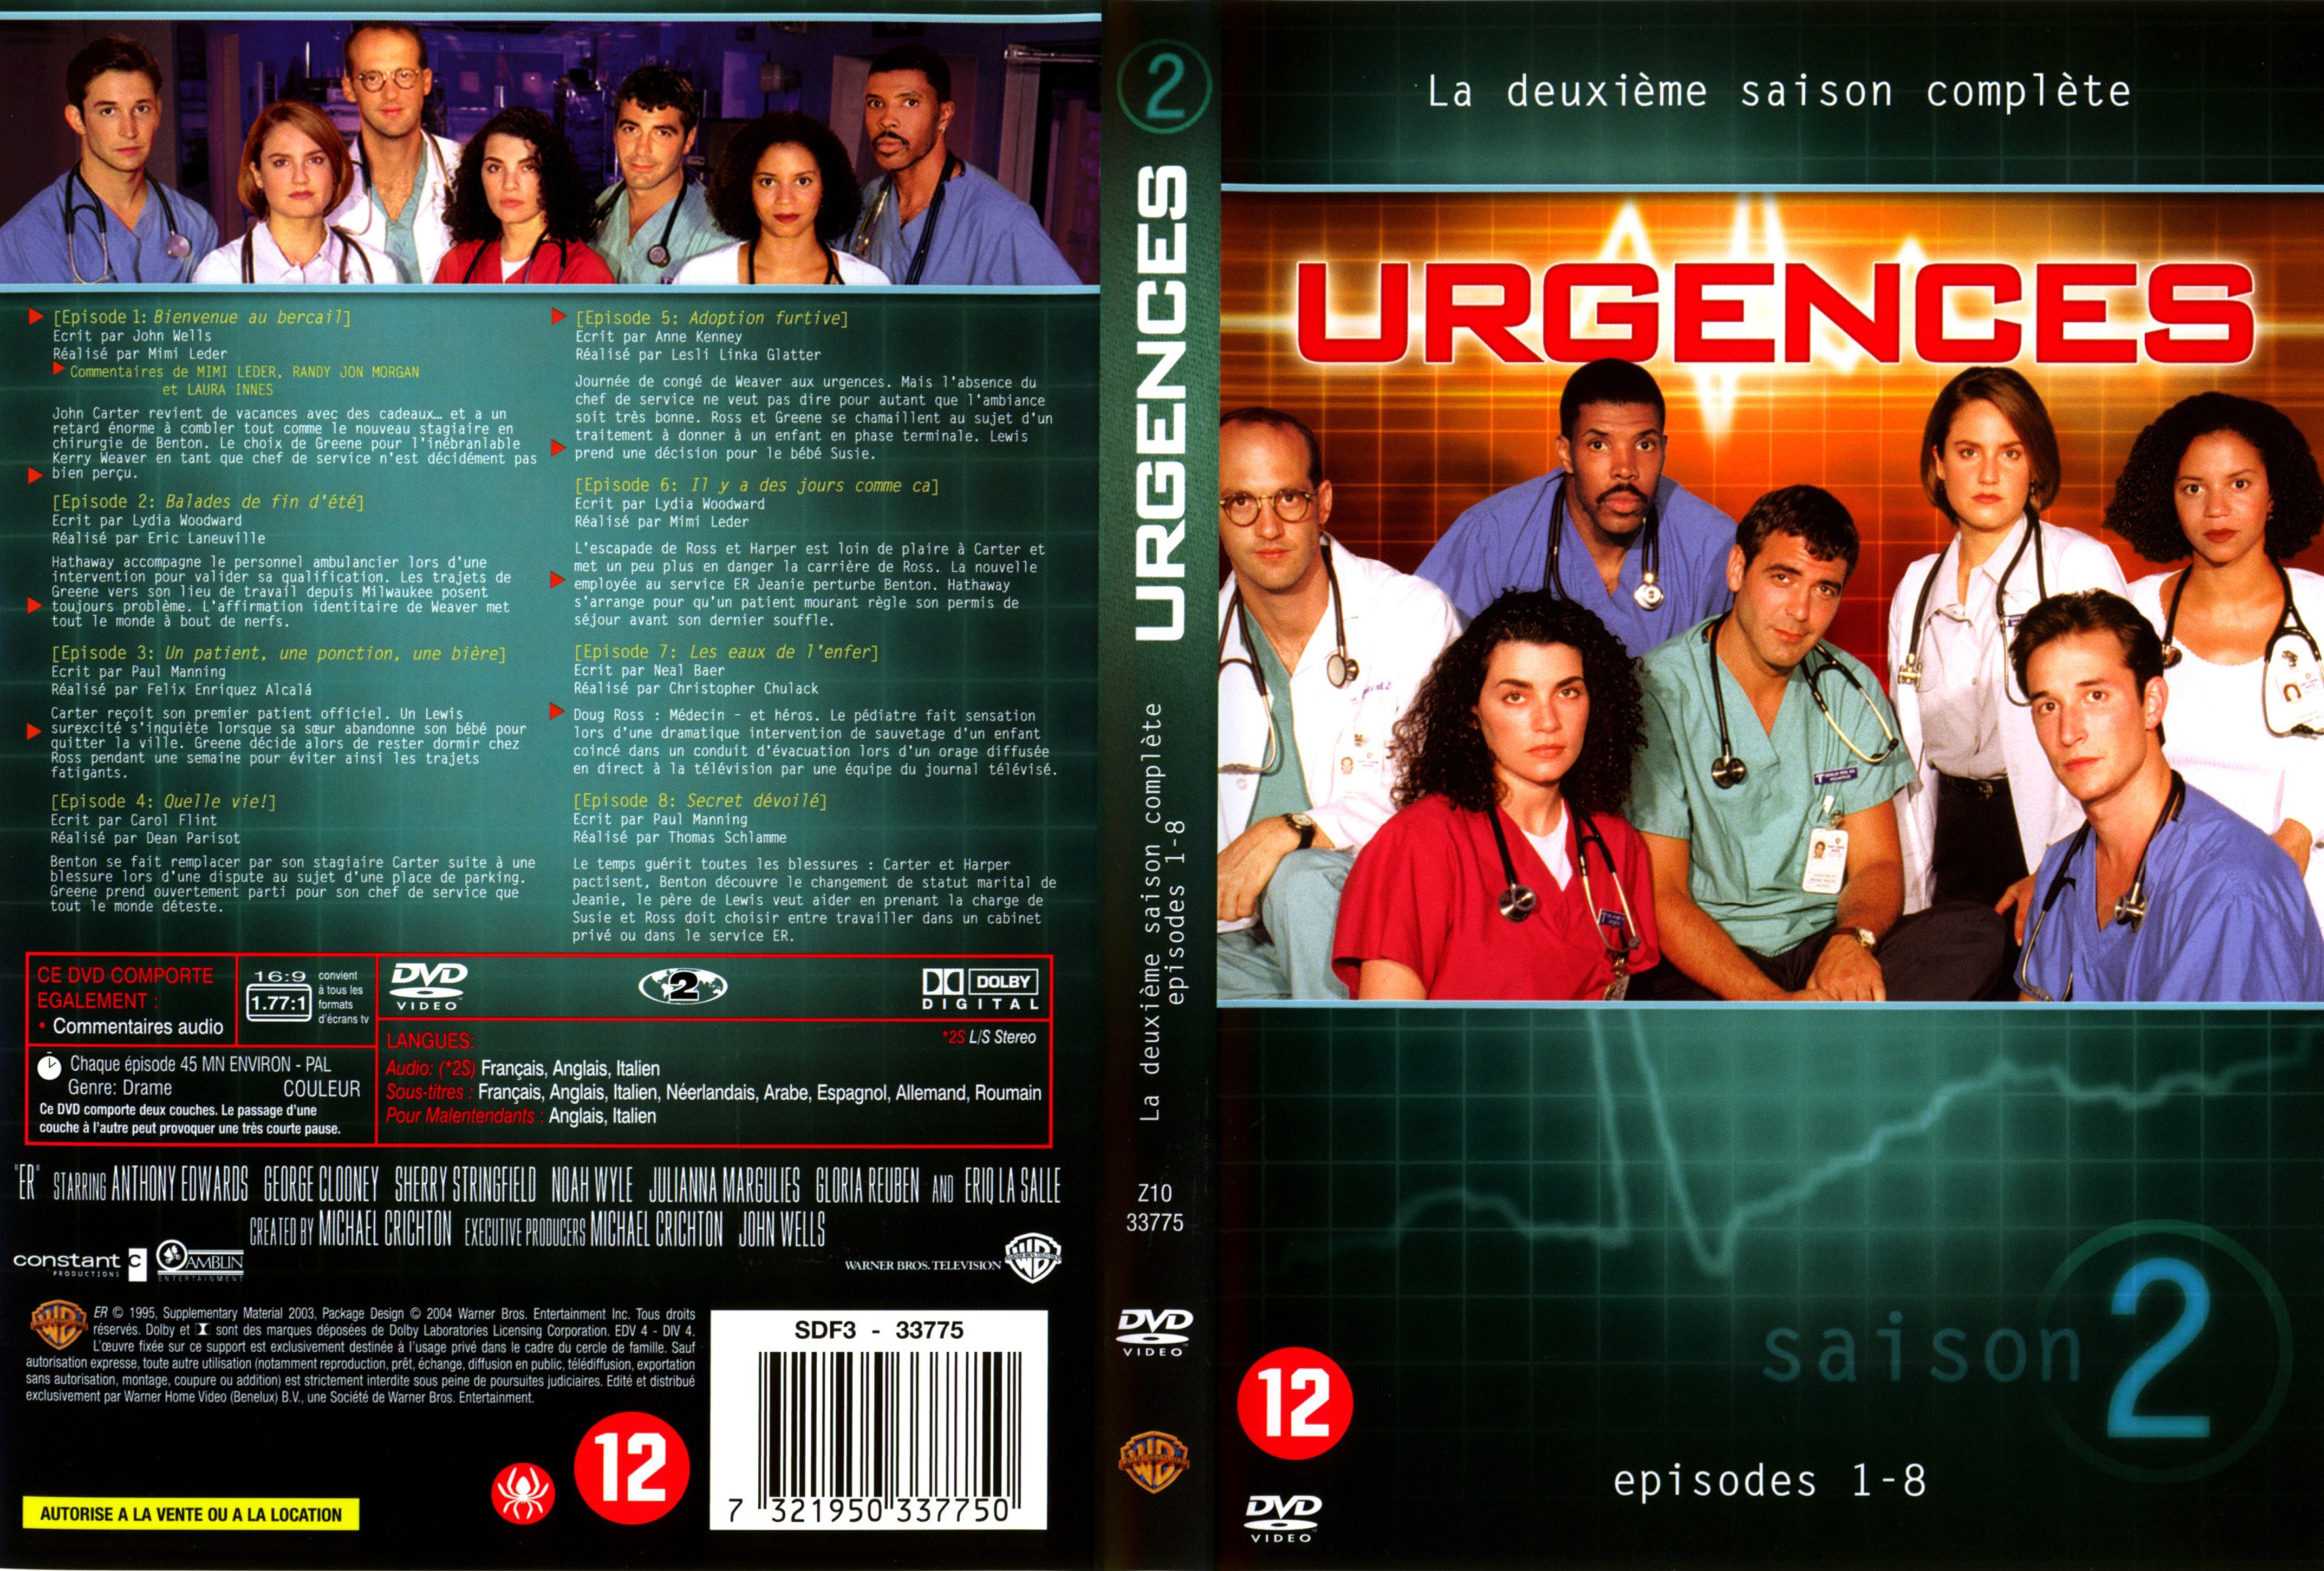 Jaquette DVD Urgences saison 2 vol 1